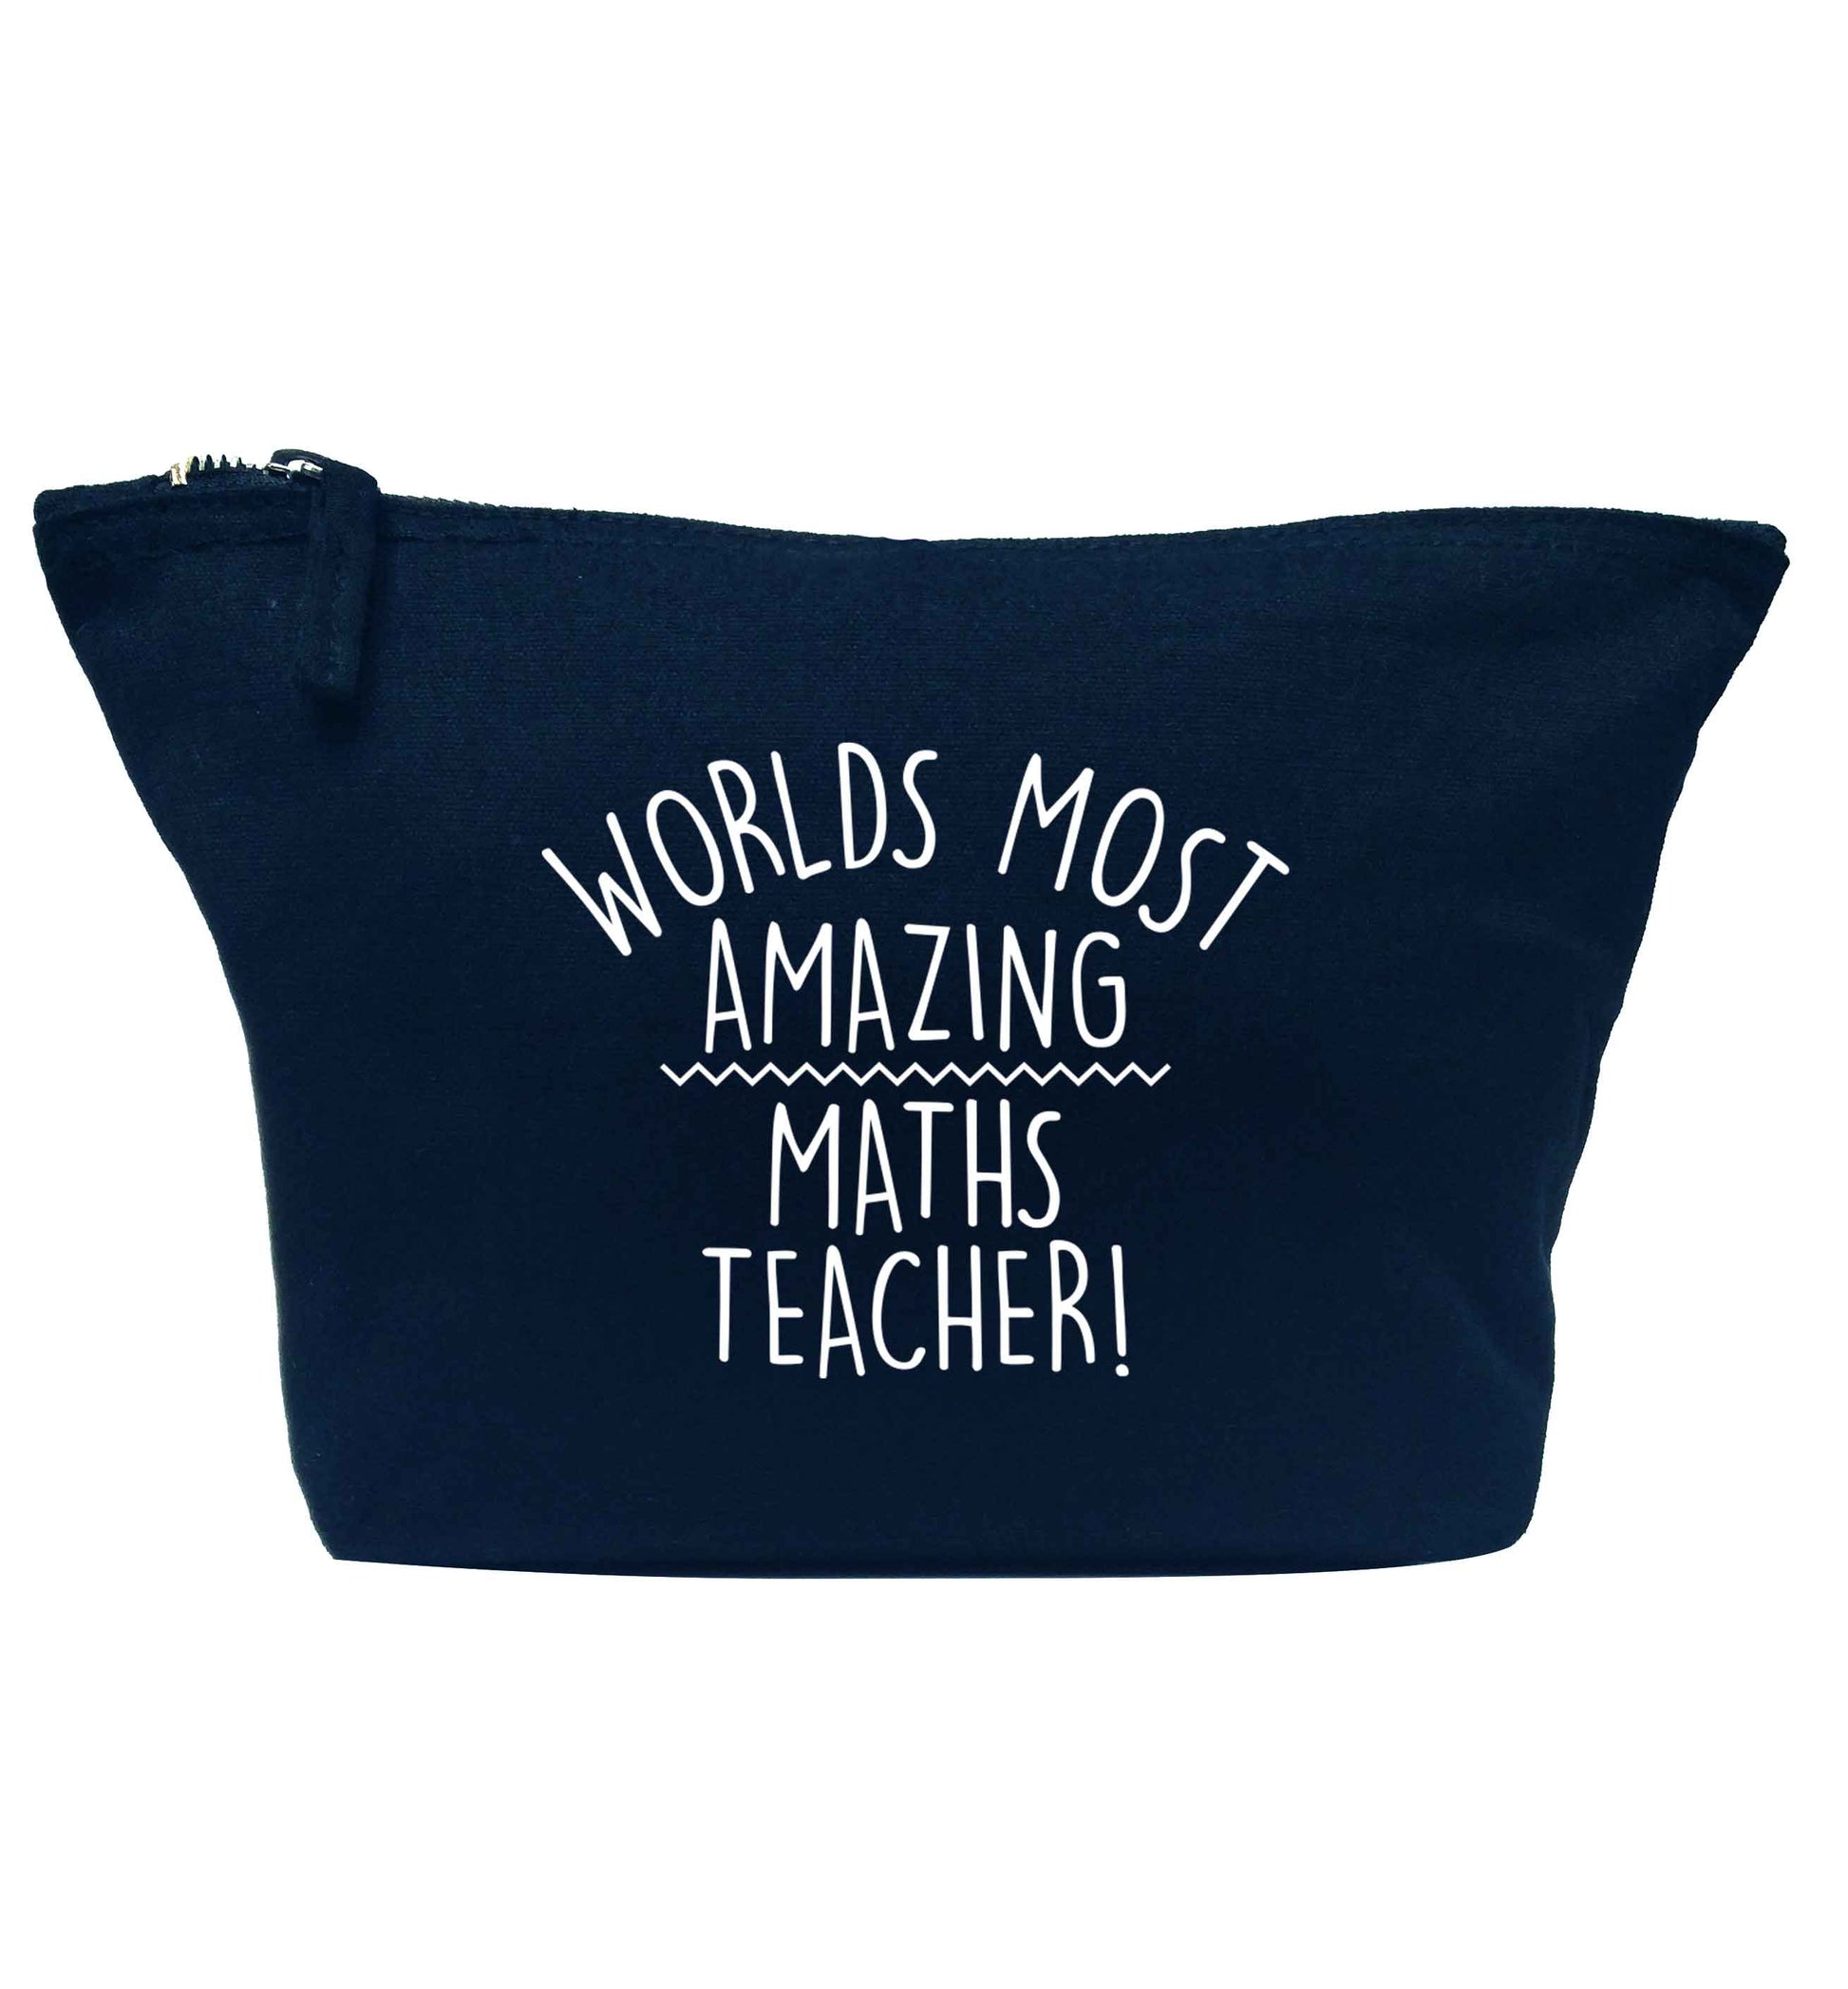 Worlds most amazing maths teacher navy makeup bag